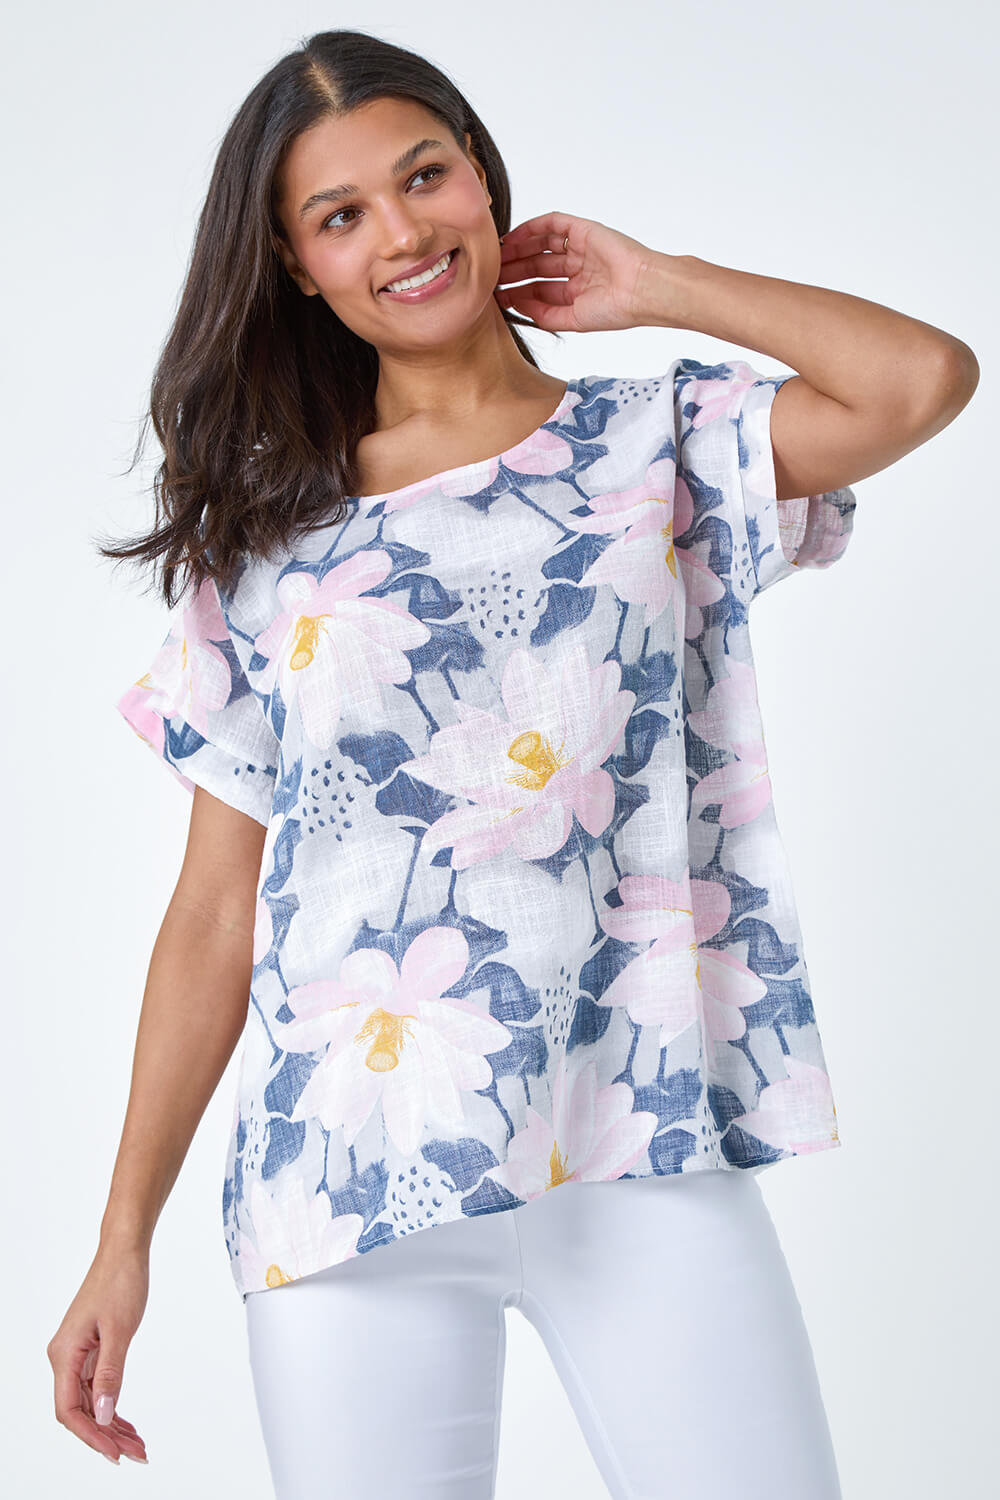 Blue Floral Print Cotton T-Shirt, Image 4 of 5